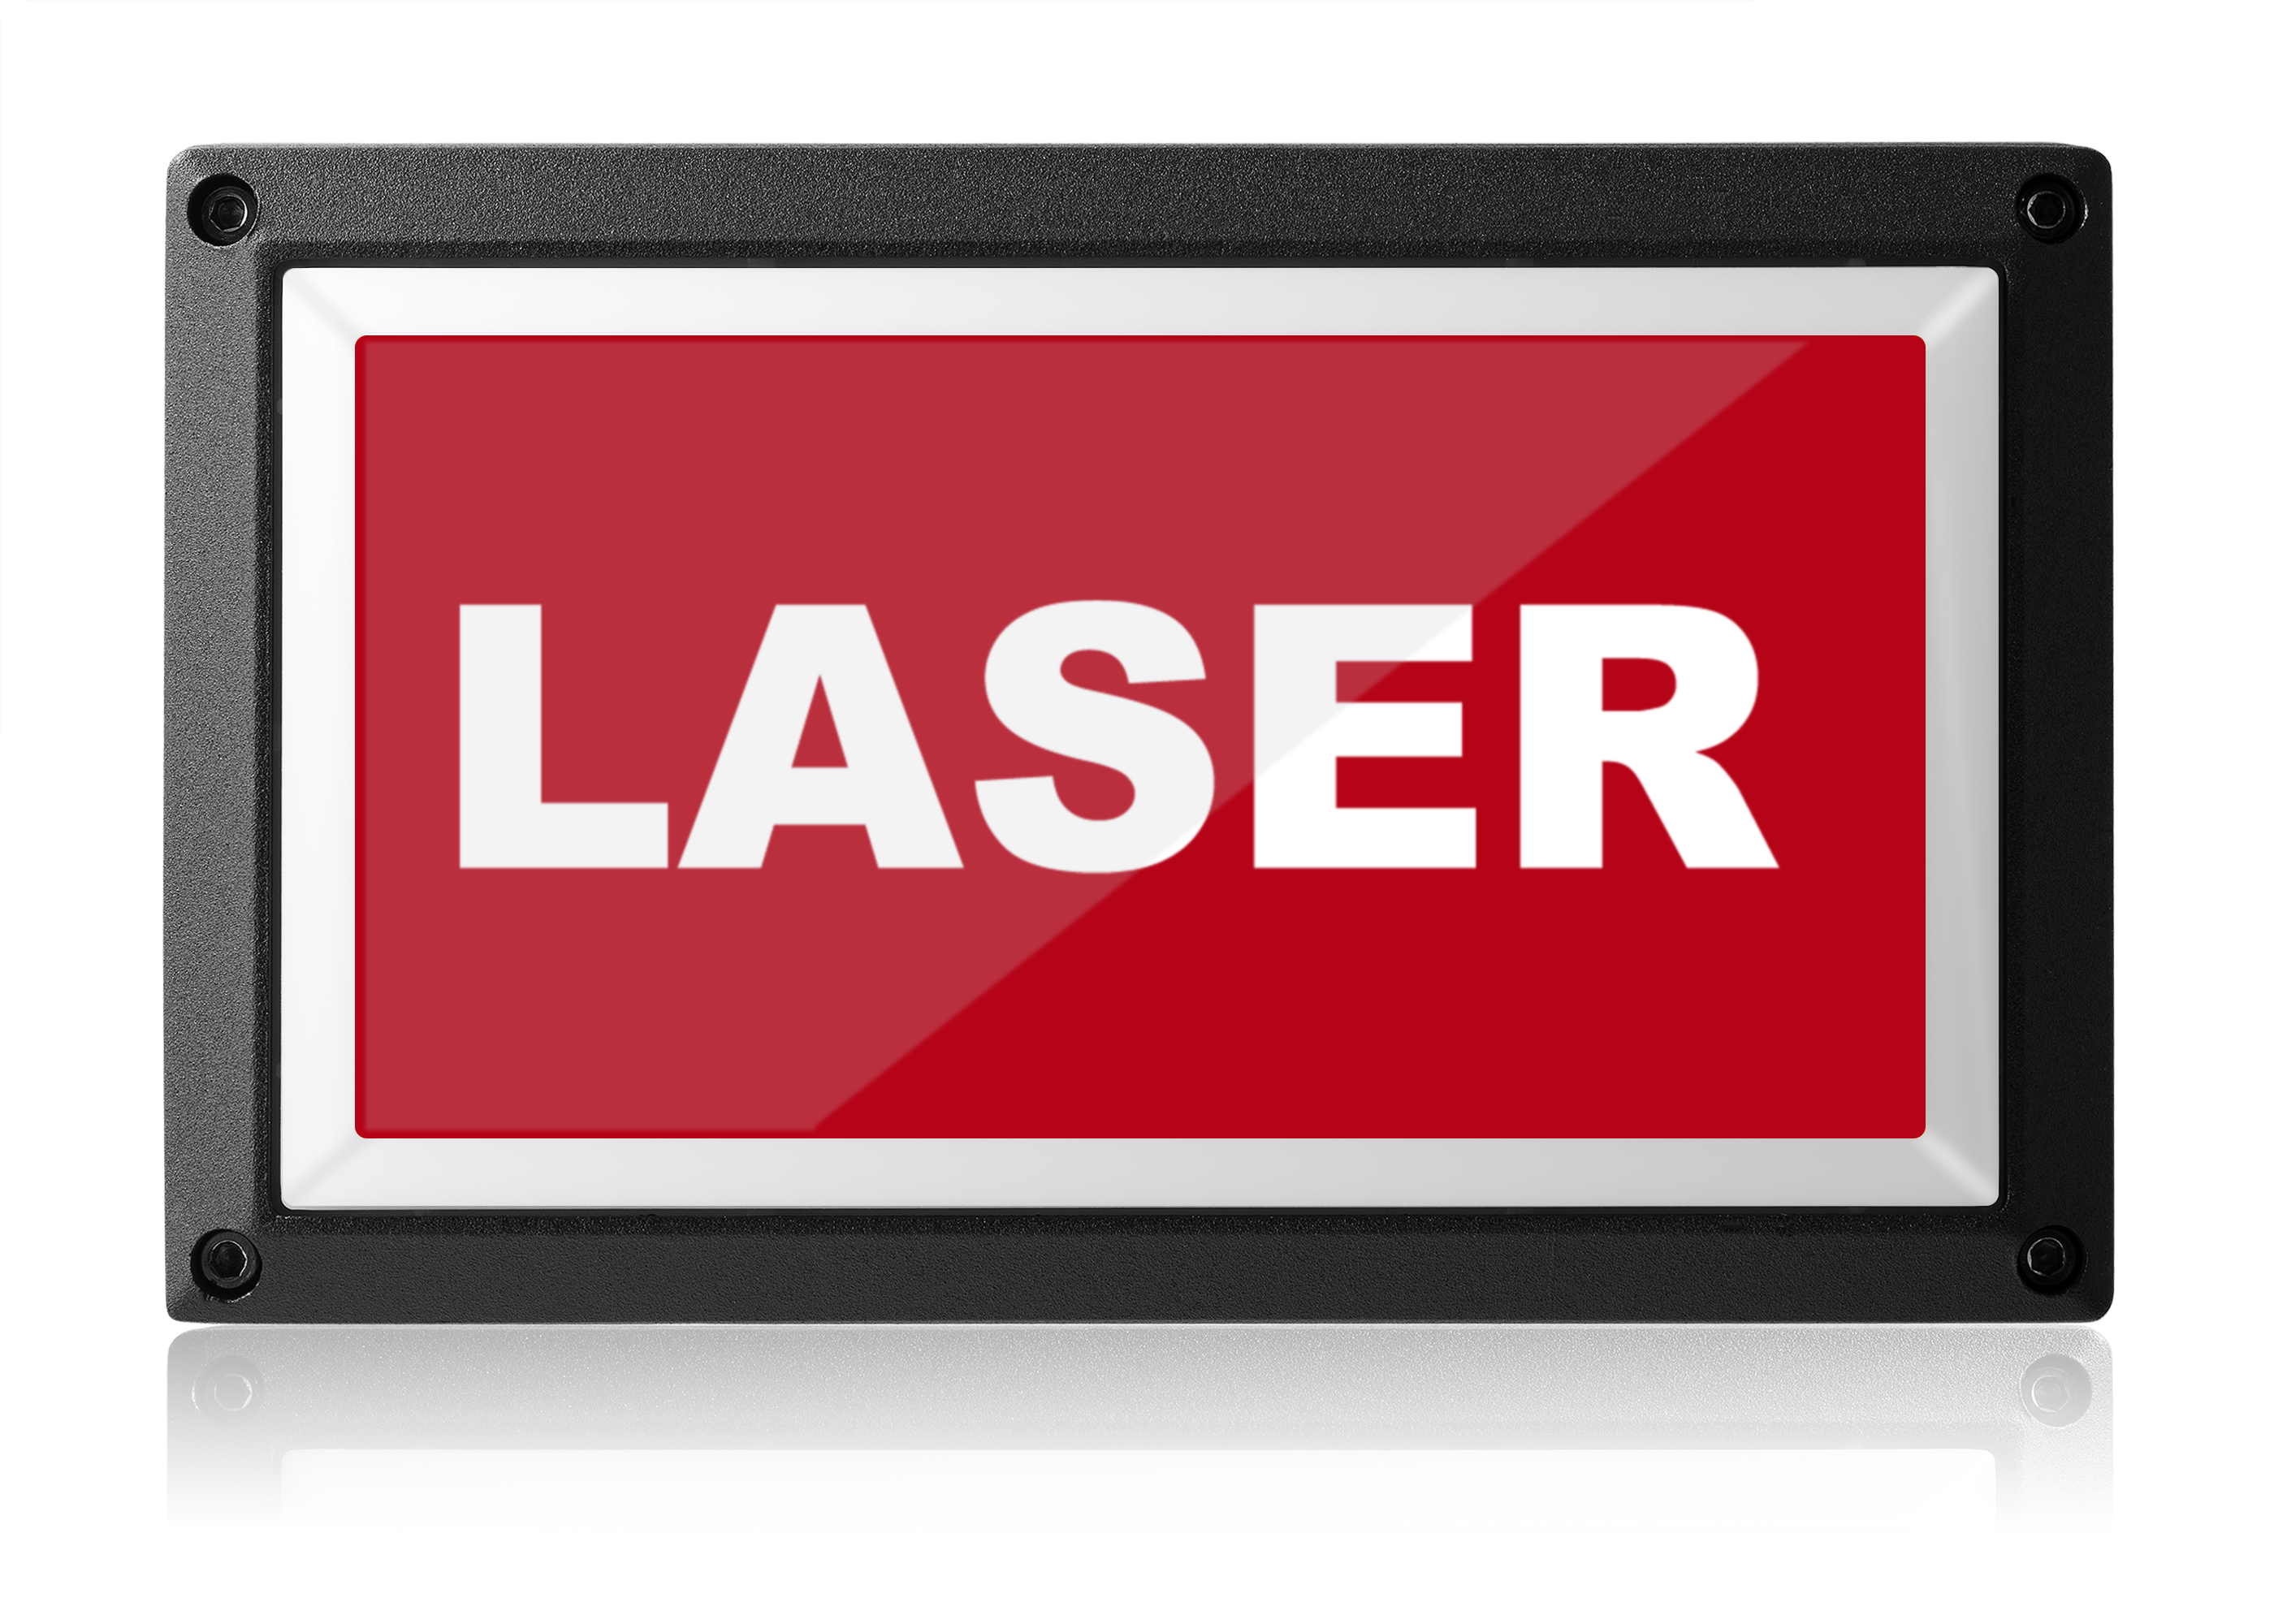 Laser Safety Light - LED Warning Sign